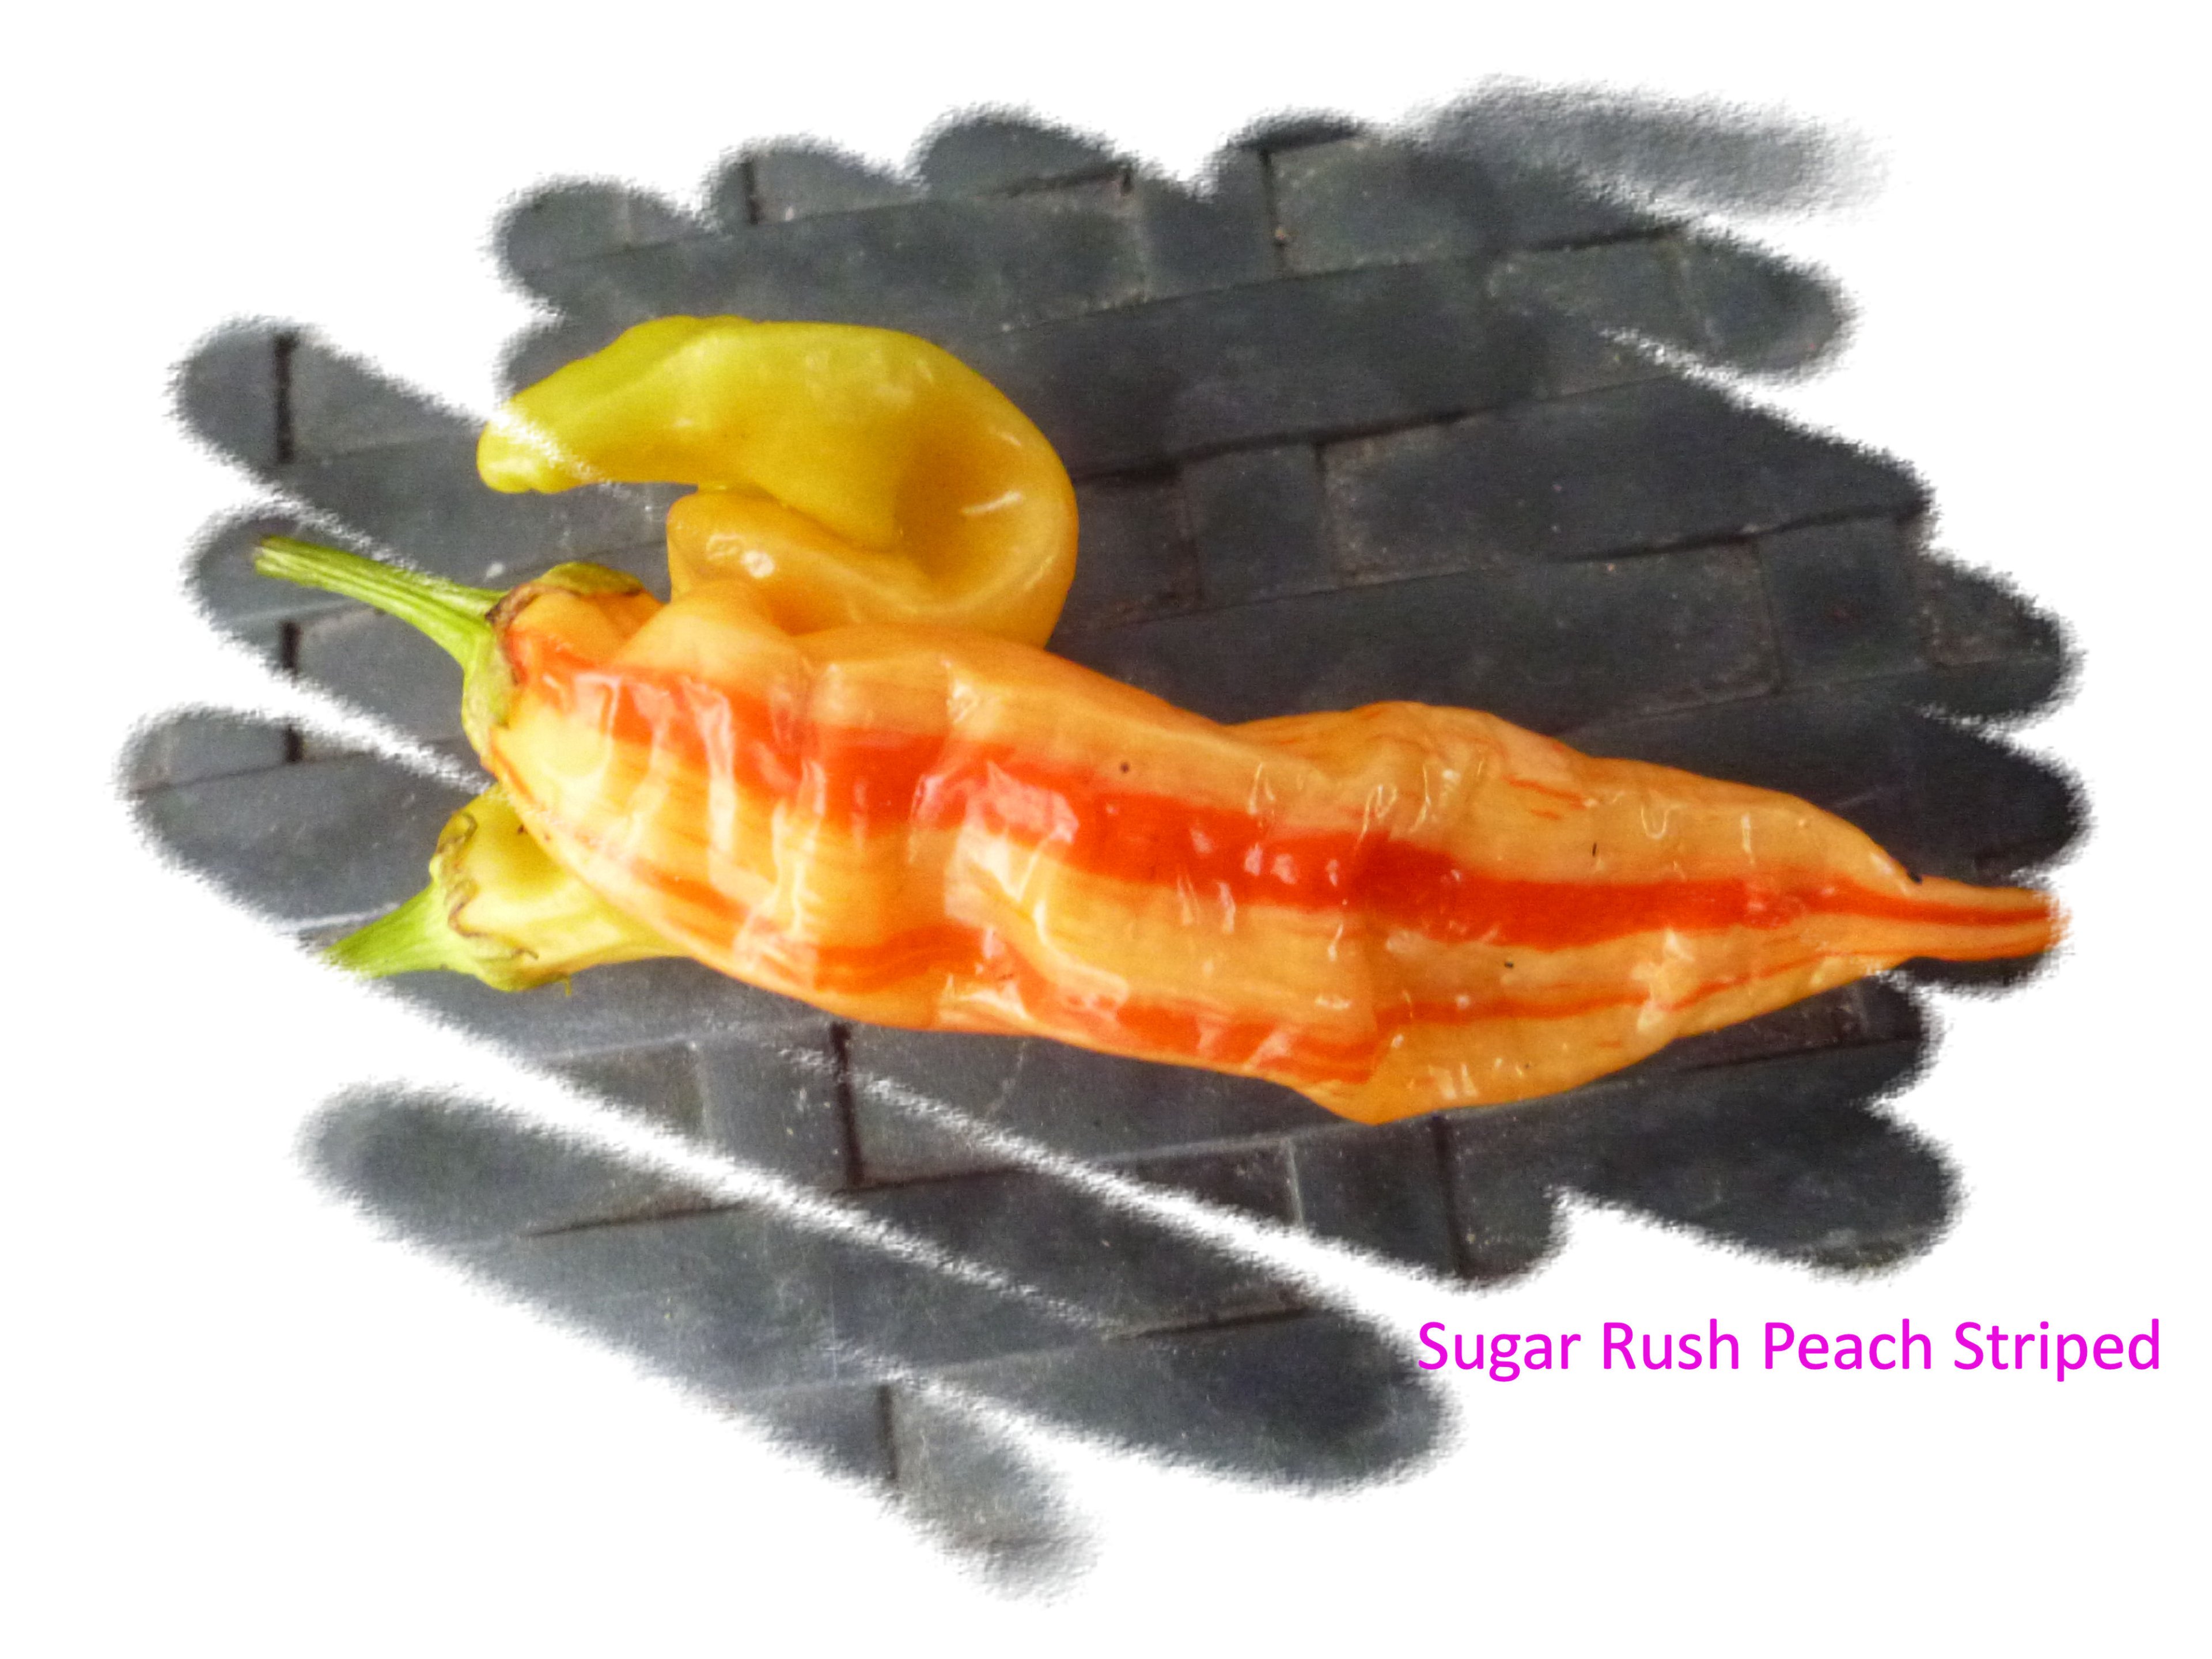 Sugar Rush Peach Striped.jpg